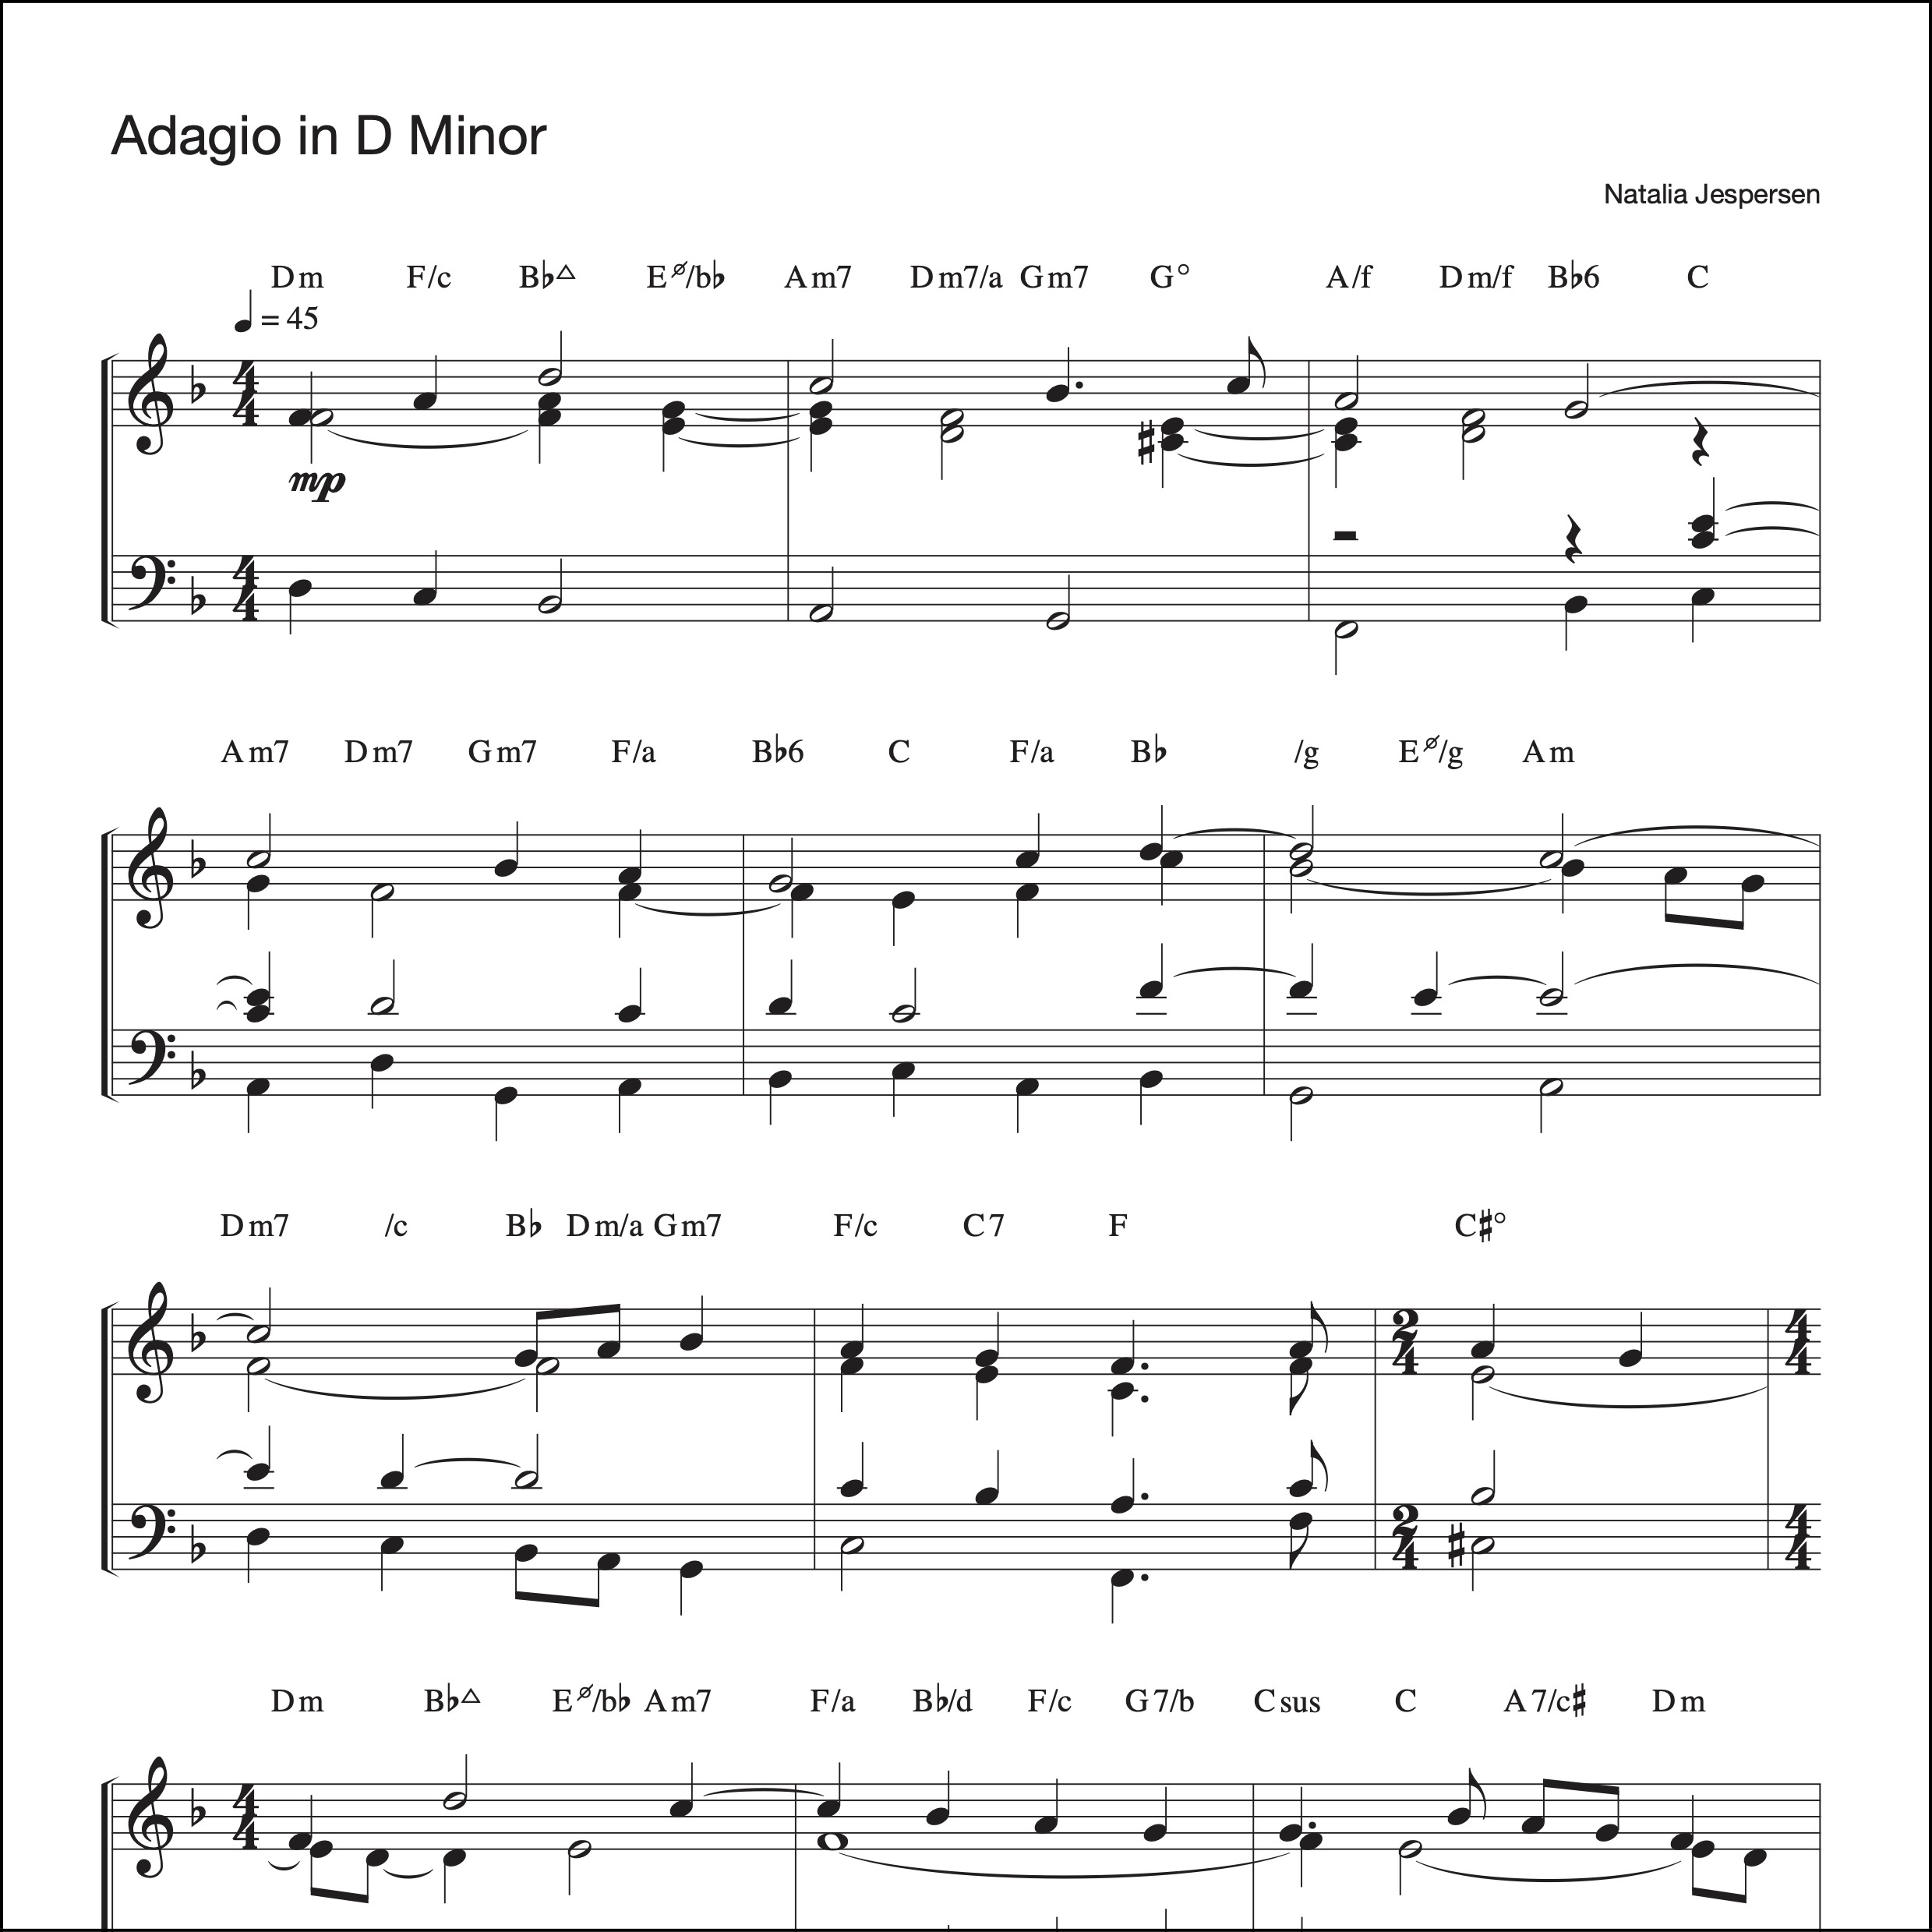 Adagio in D Minor